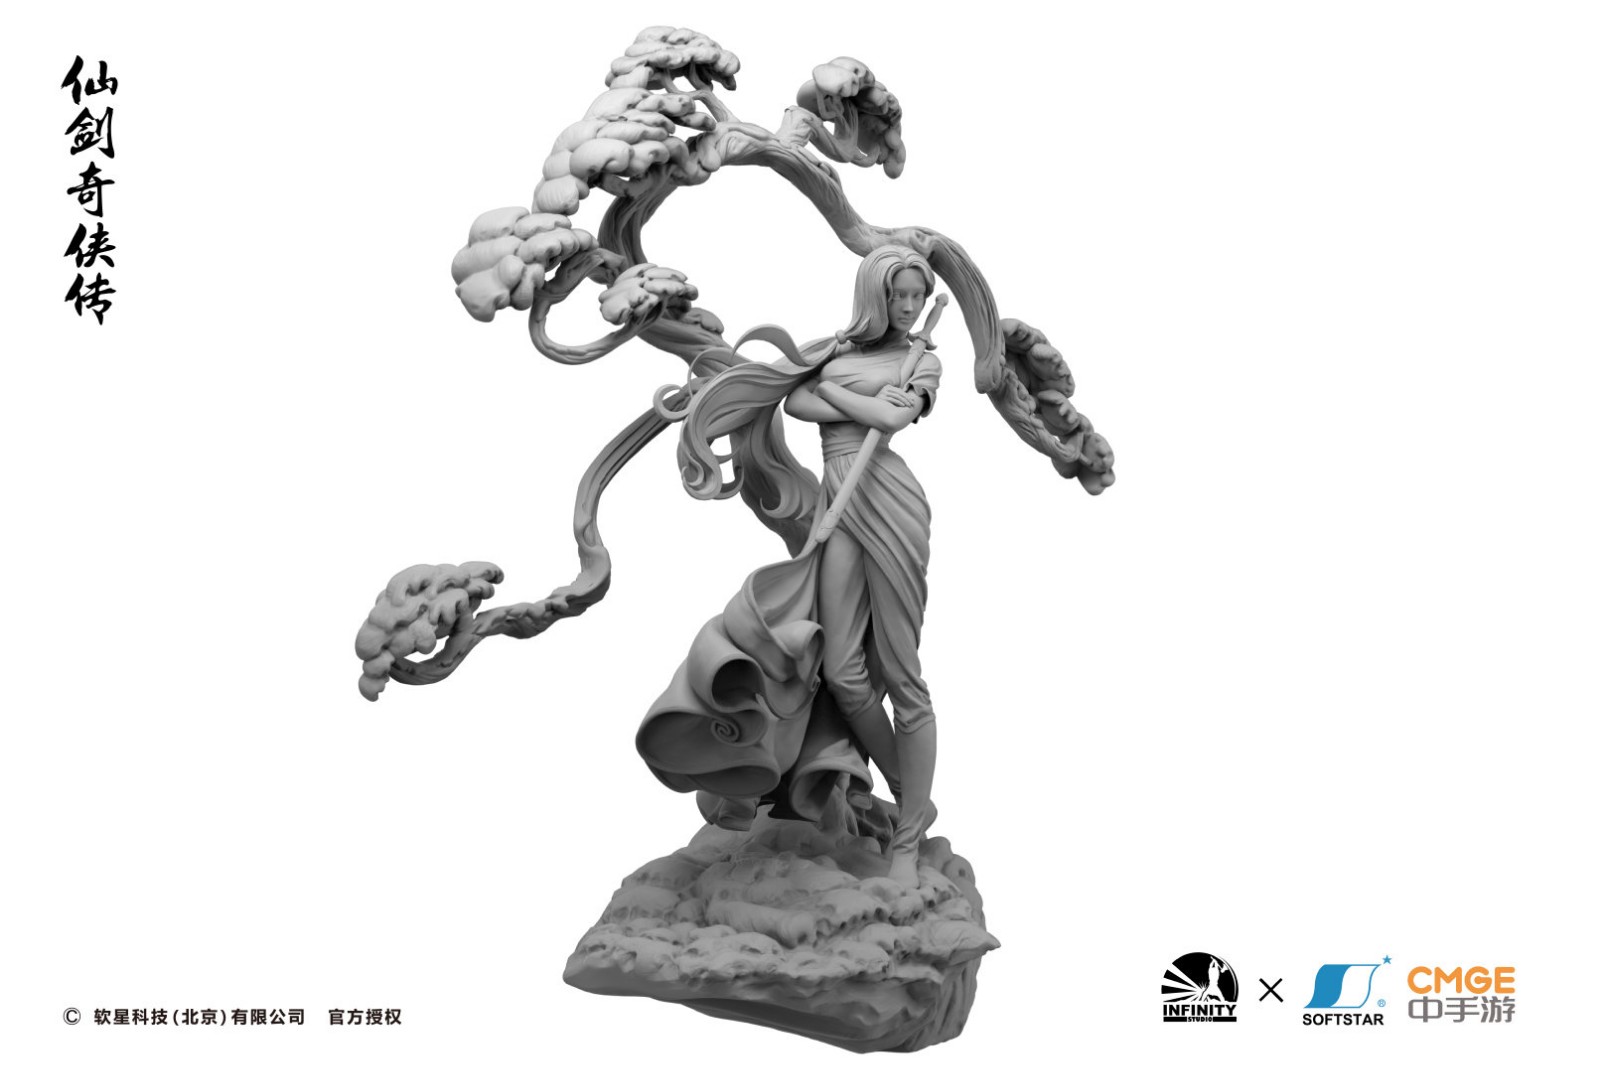 开天工作室 x 软星推出《仙剑奇侠传》林月如雕像